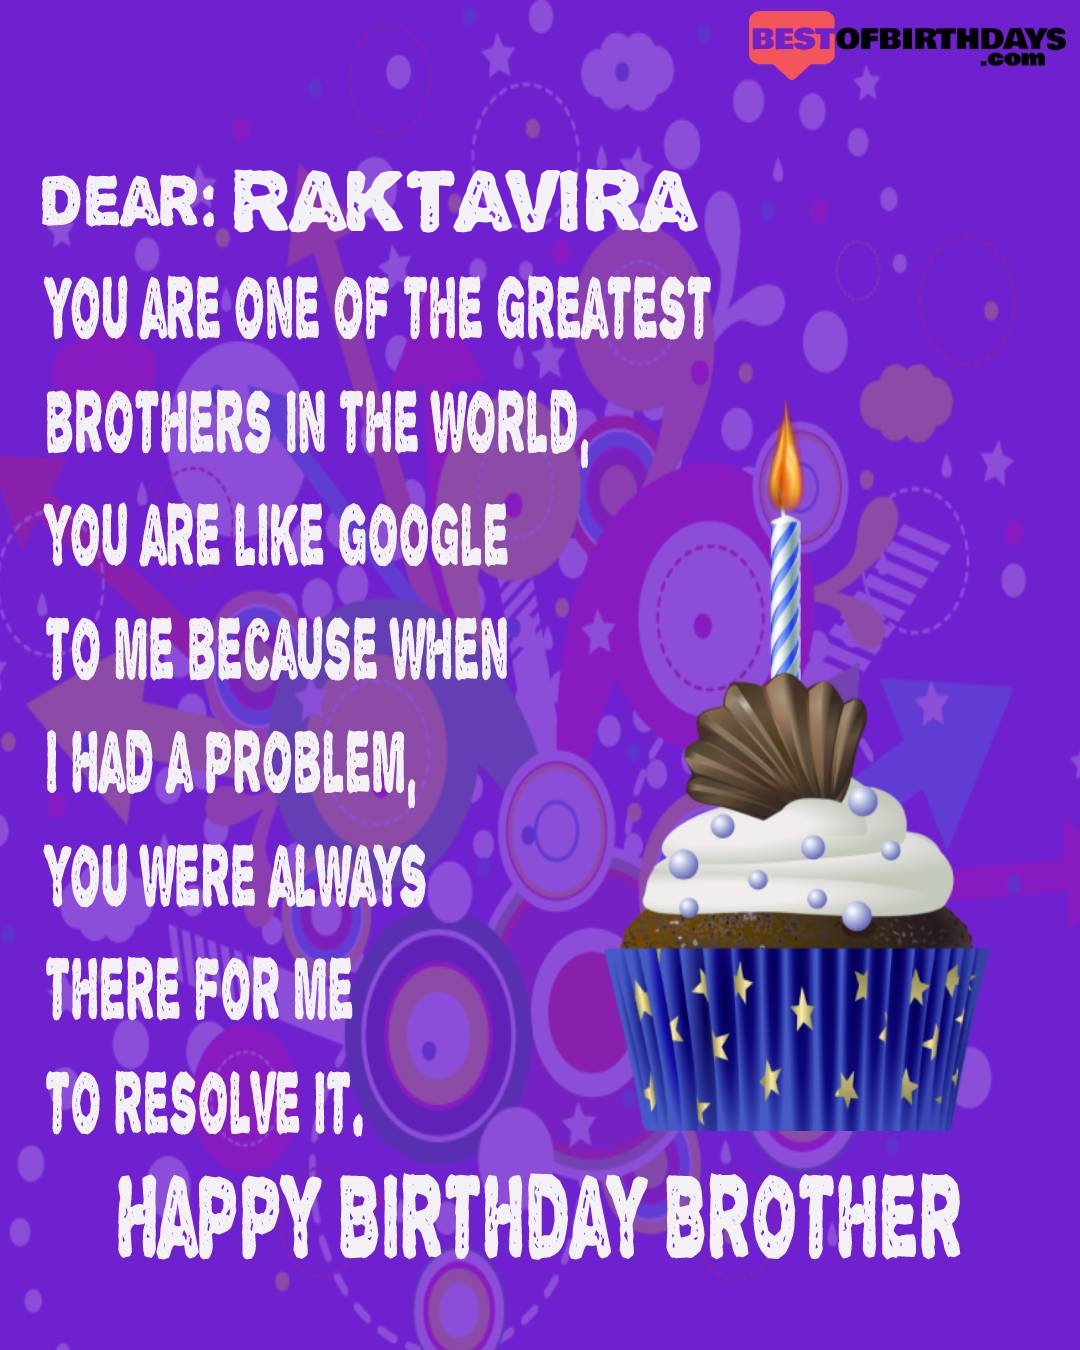 Happy birthday raktavira bhai brother bro